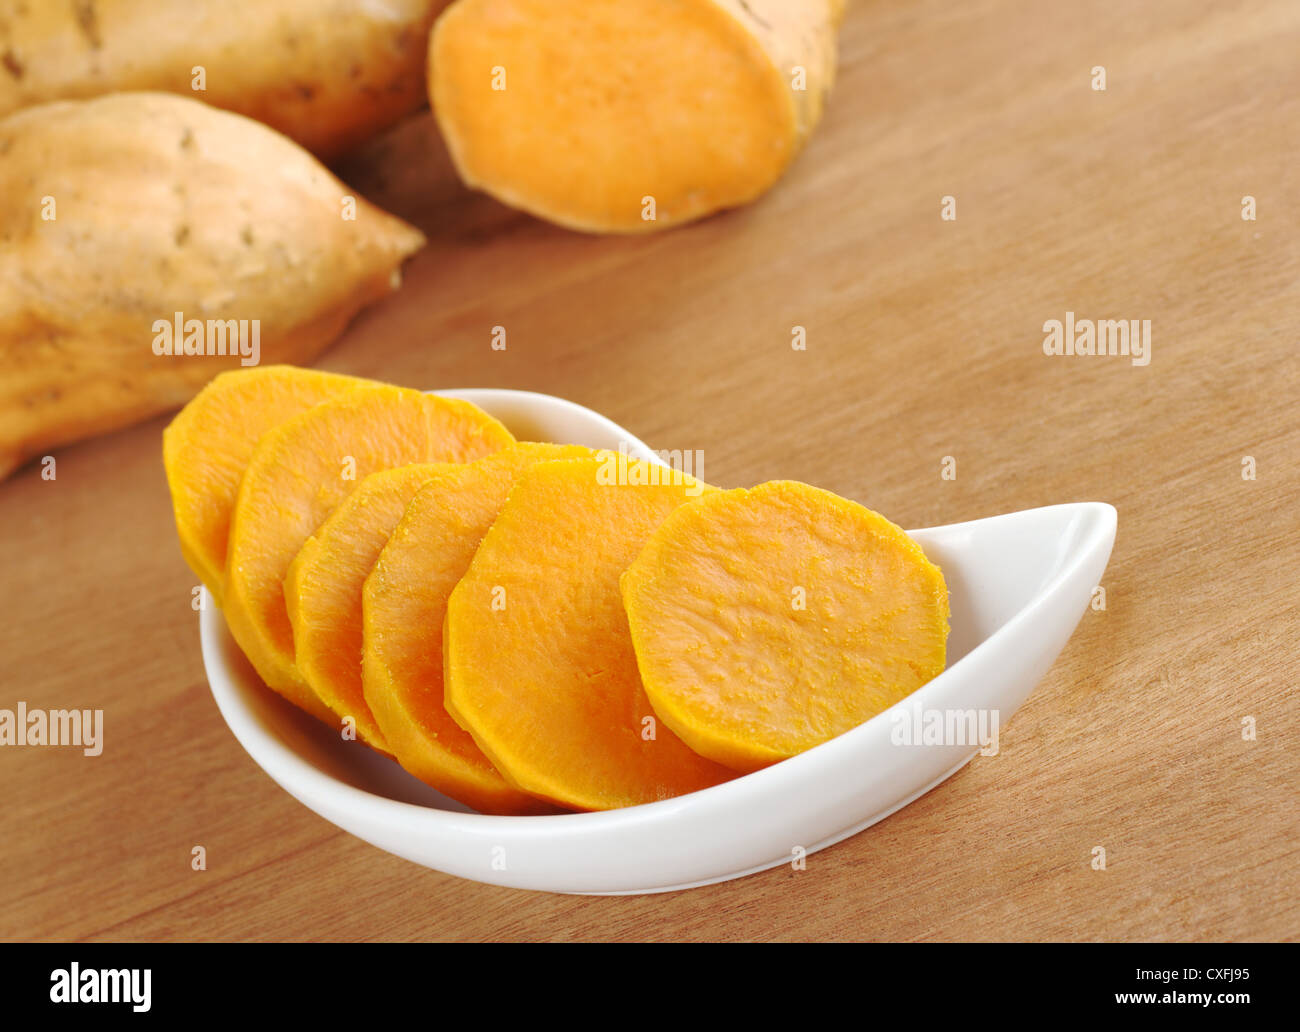 Cuocere la patata dolce (lat. Ipomoea batatas) tagliato a fette nella ciotola bianco su una superficie di legno con materie prime patate dolci nel retro Foto Stock